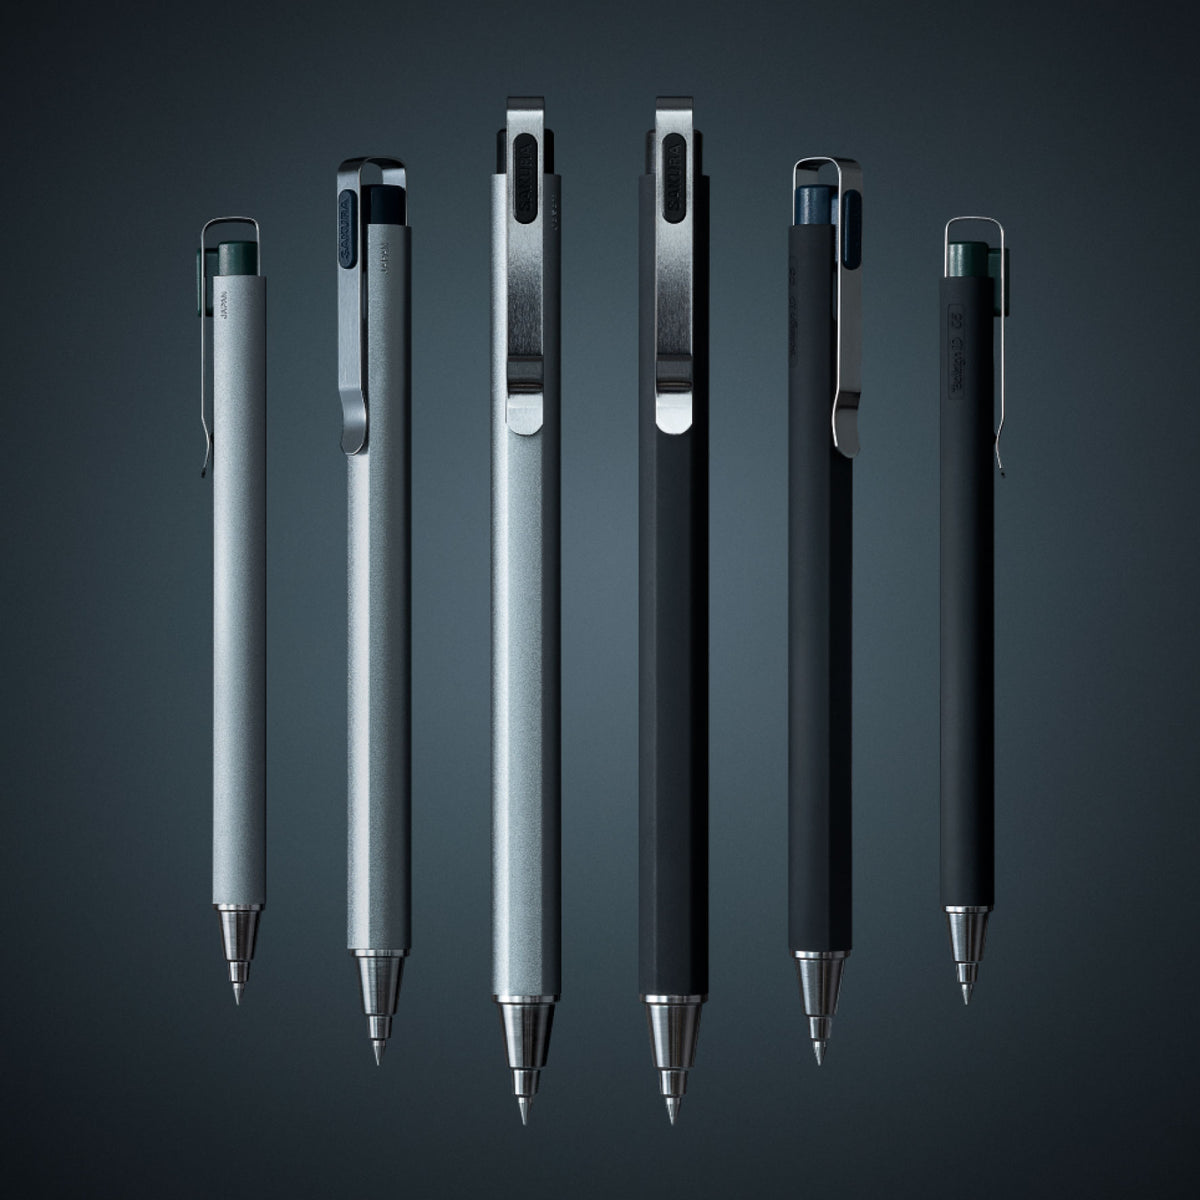 Sakura - Gel Pen - Ballsign iD Plus - Black 0.5mm - Forest Black